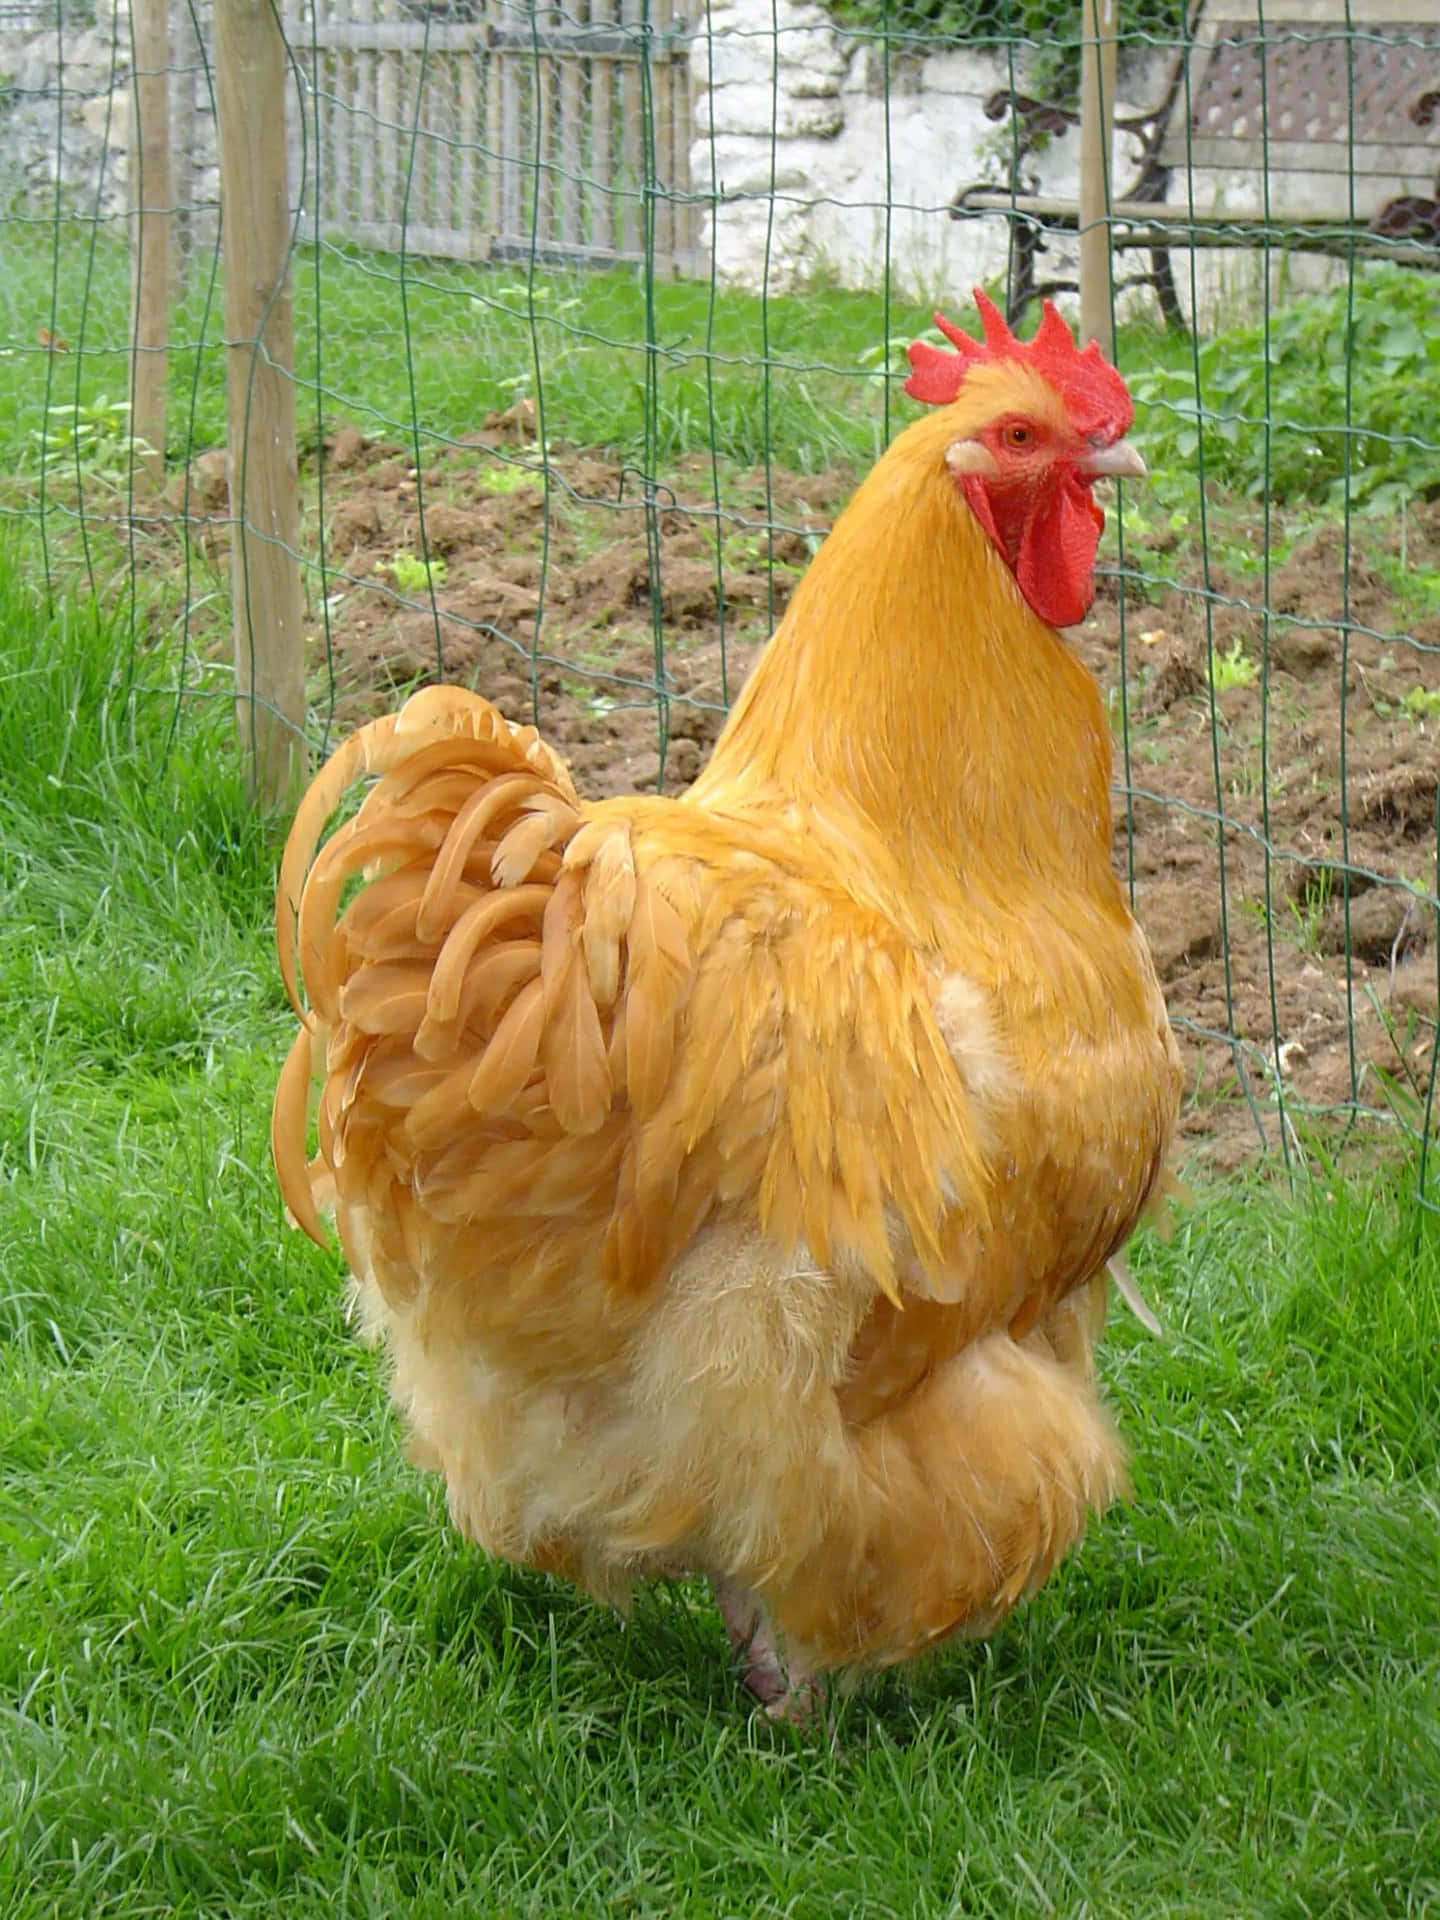 A Chicken In A Field